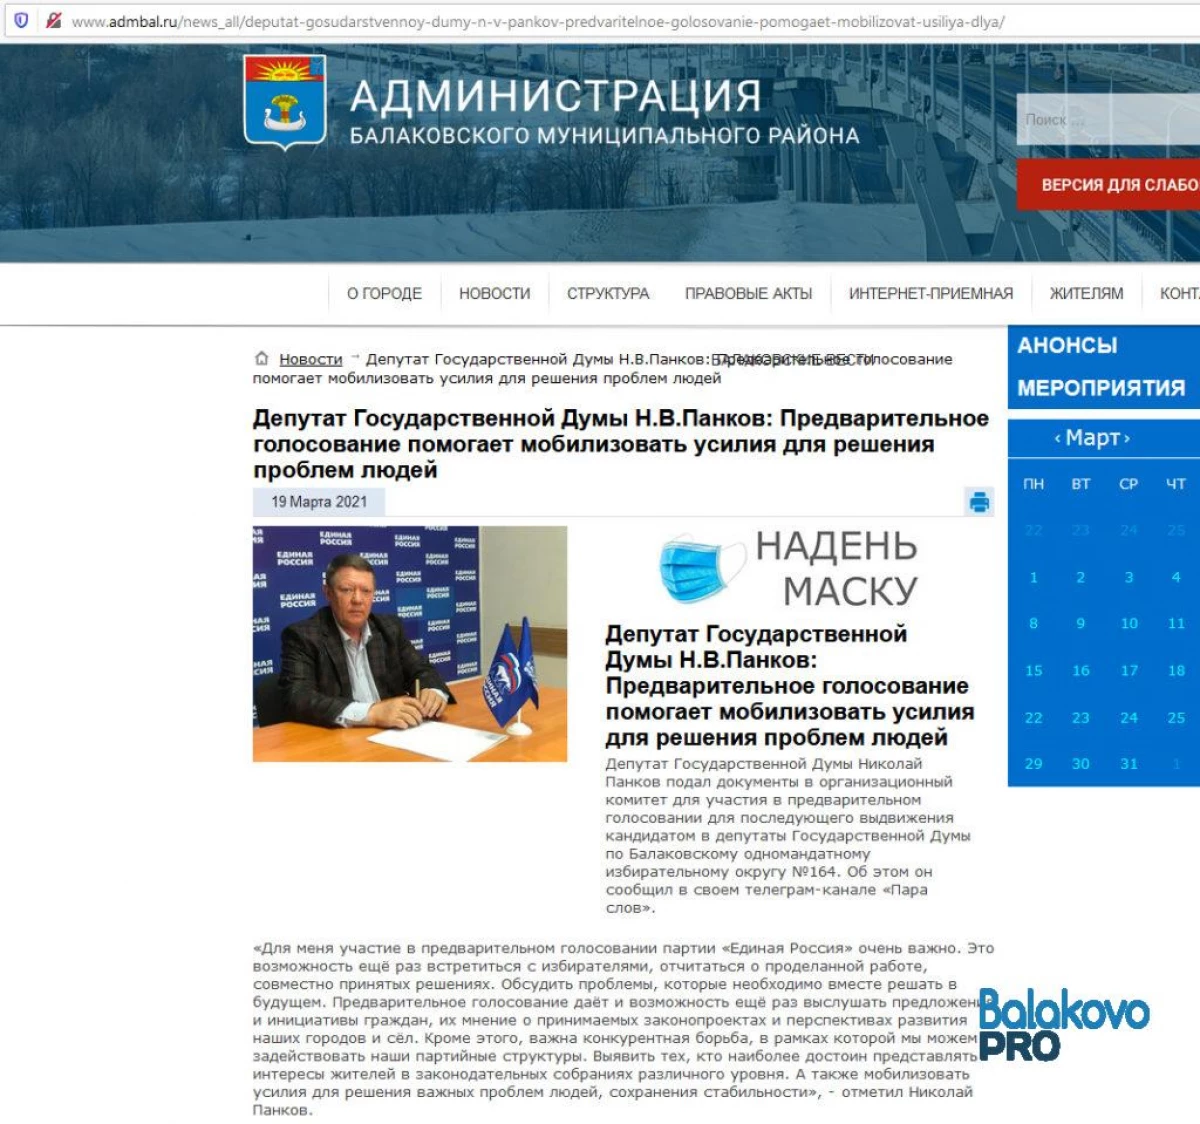 Balakovo ilçesinin idaresi, Devlet Duma milletvekilleri için adayın müteakip aday gösterilmesi için 